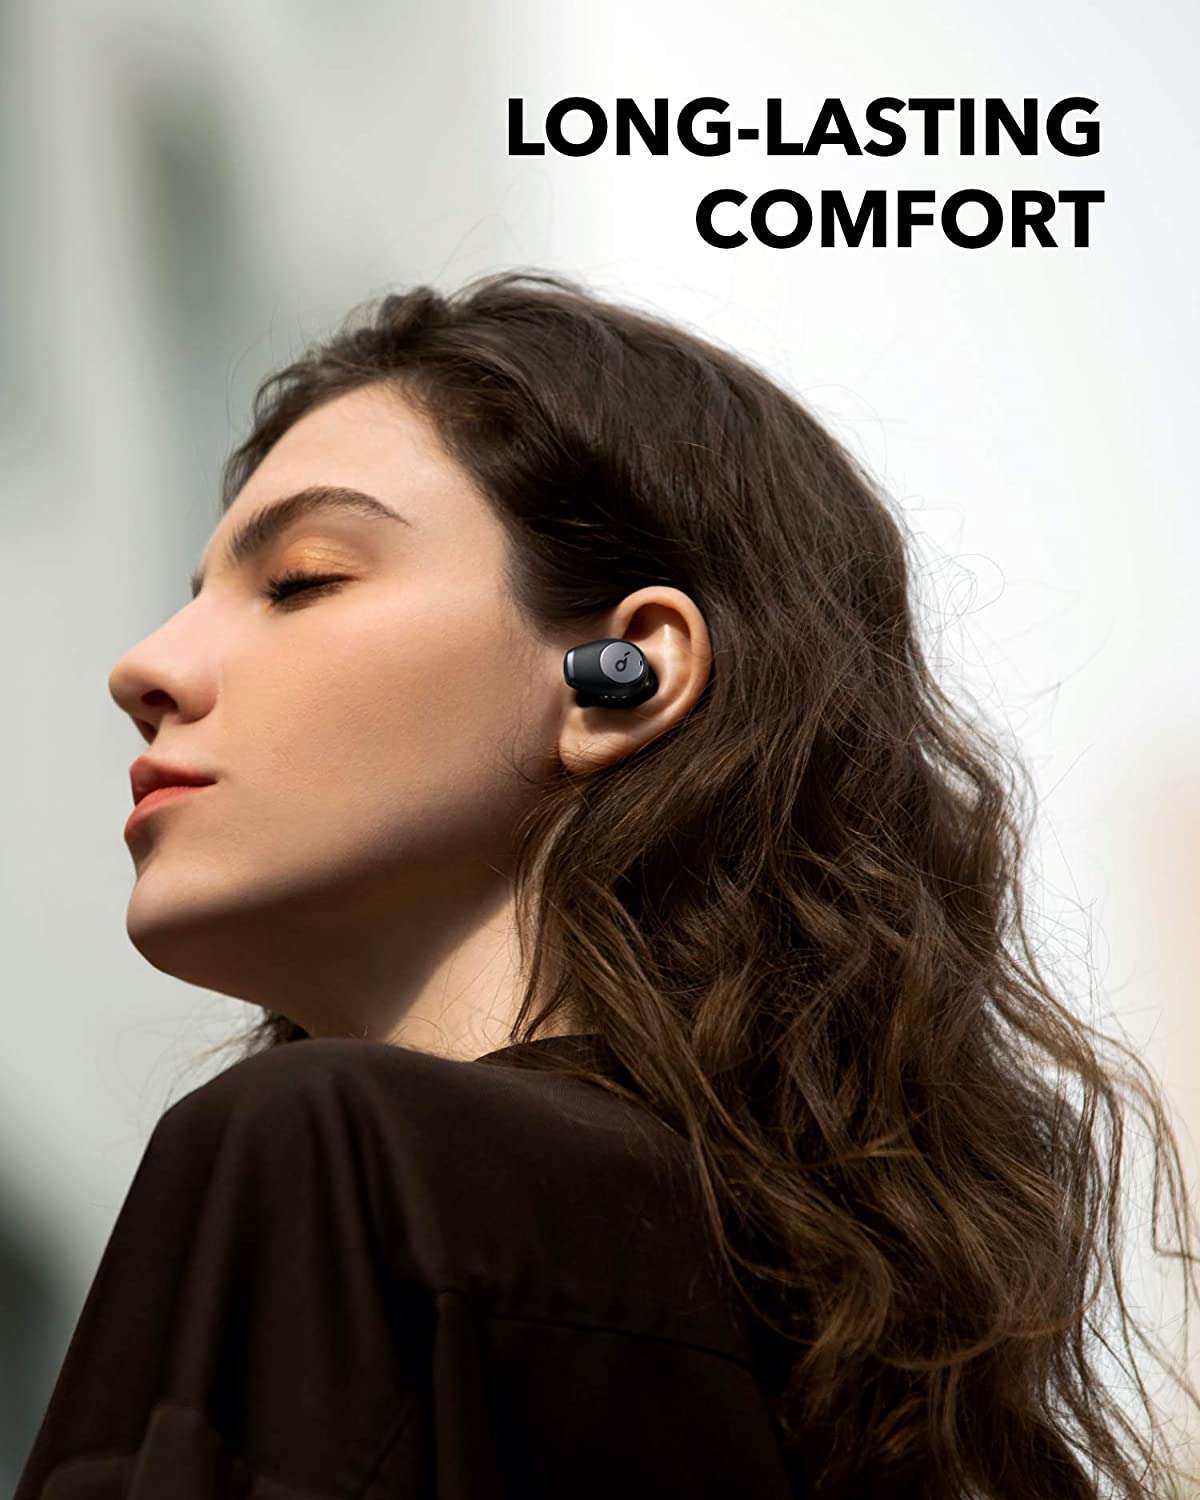 soundcore-auricolari-wireless-speciali-prezzo-basso-comfort